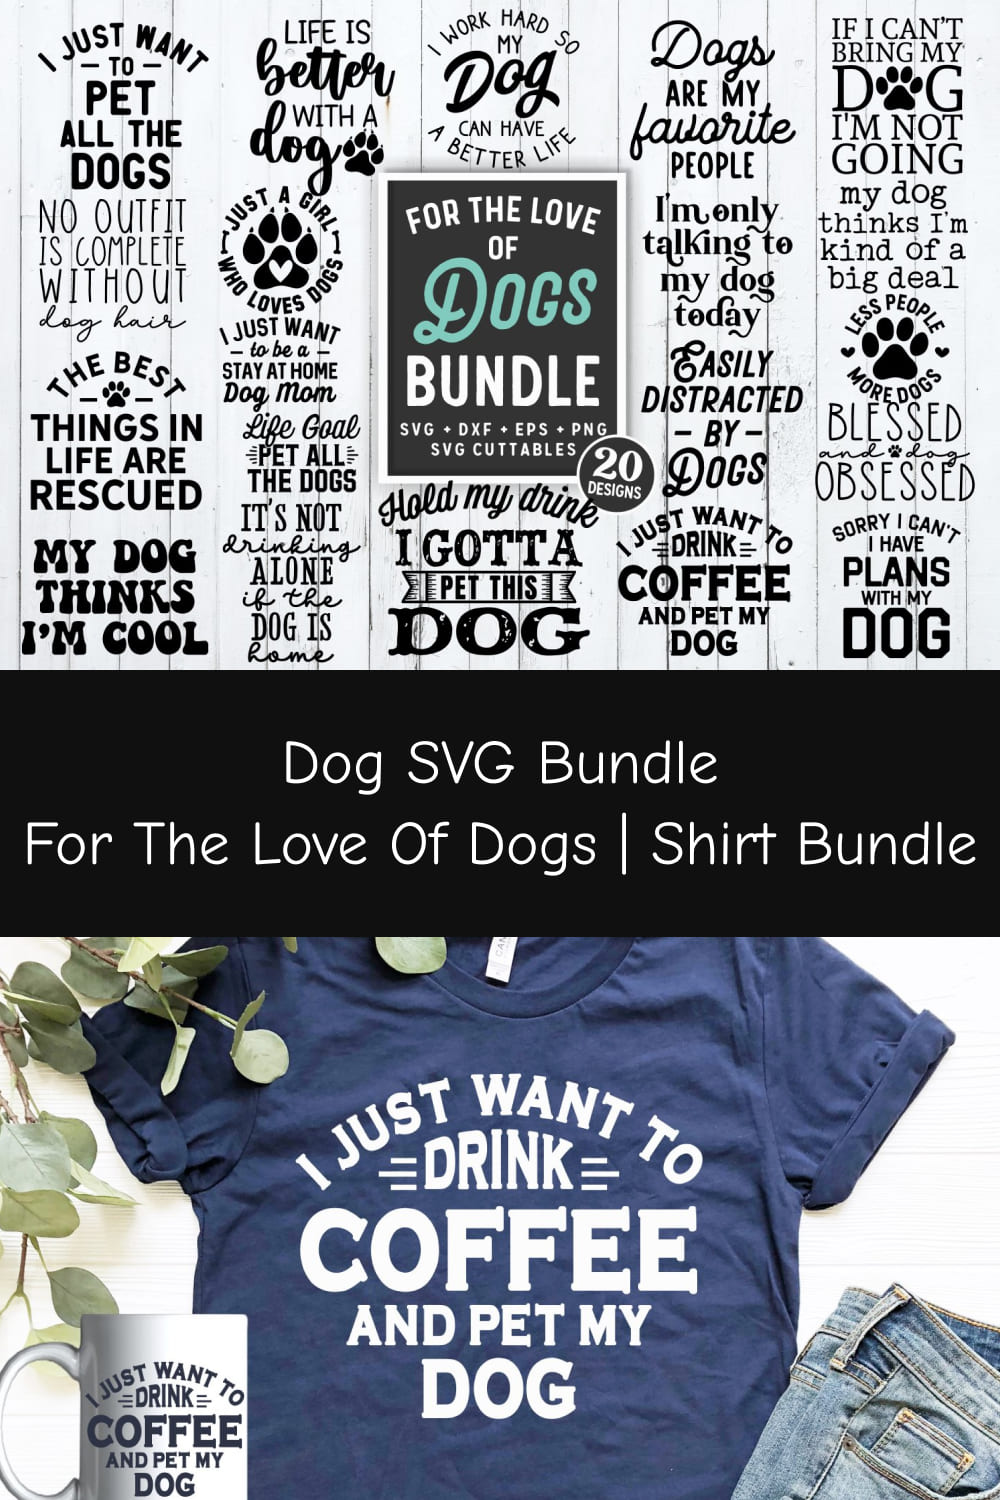 03 dog svg bundle for the love of dogs shirt bundle pinterest